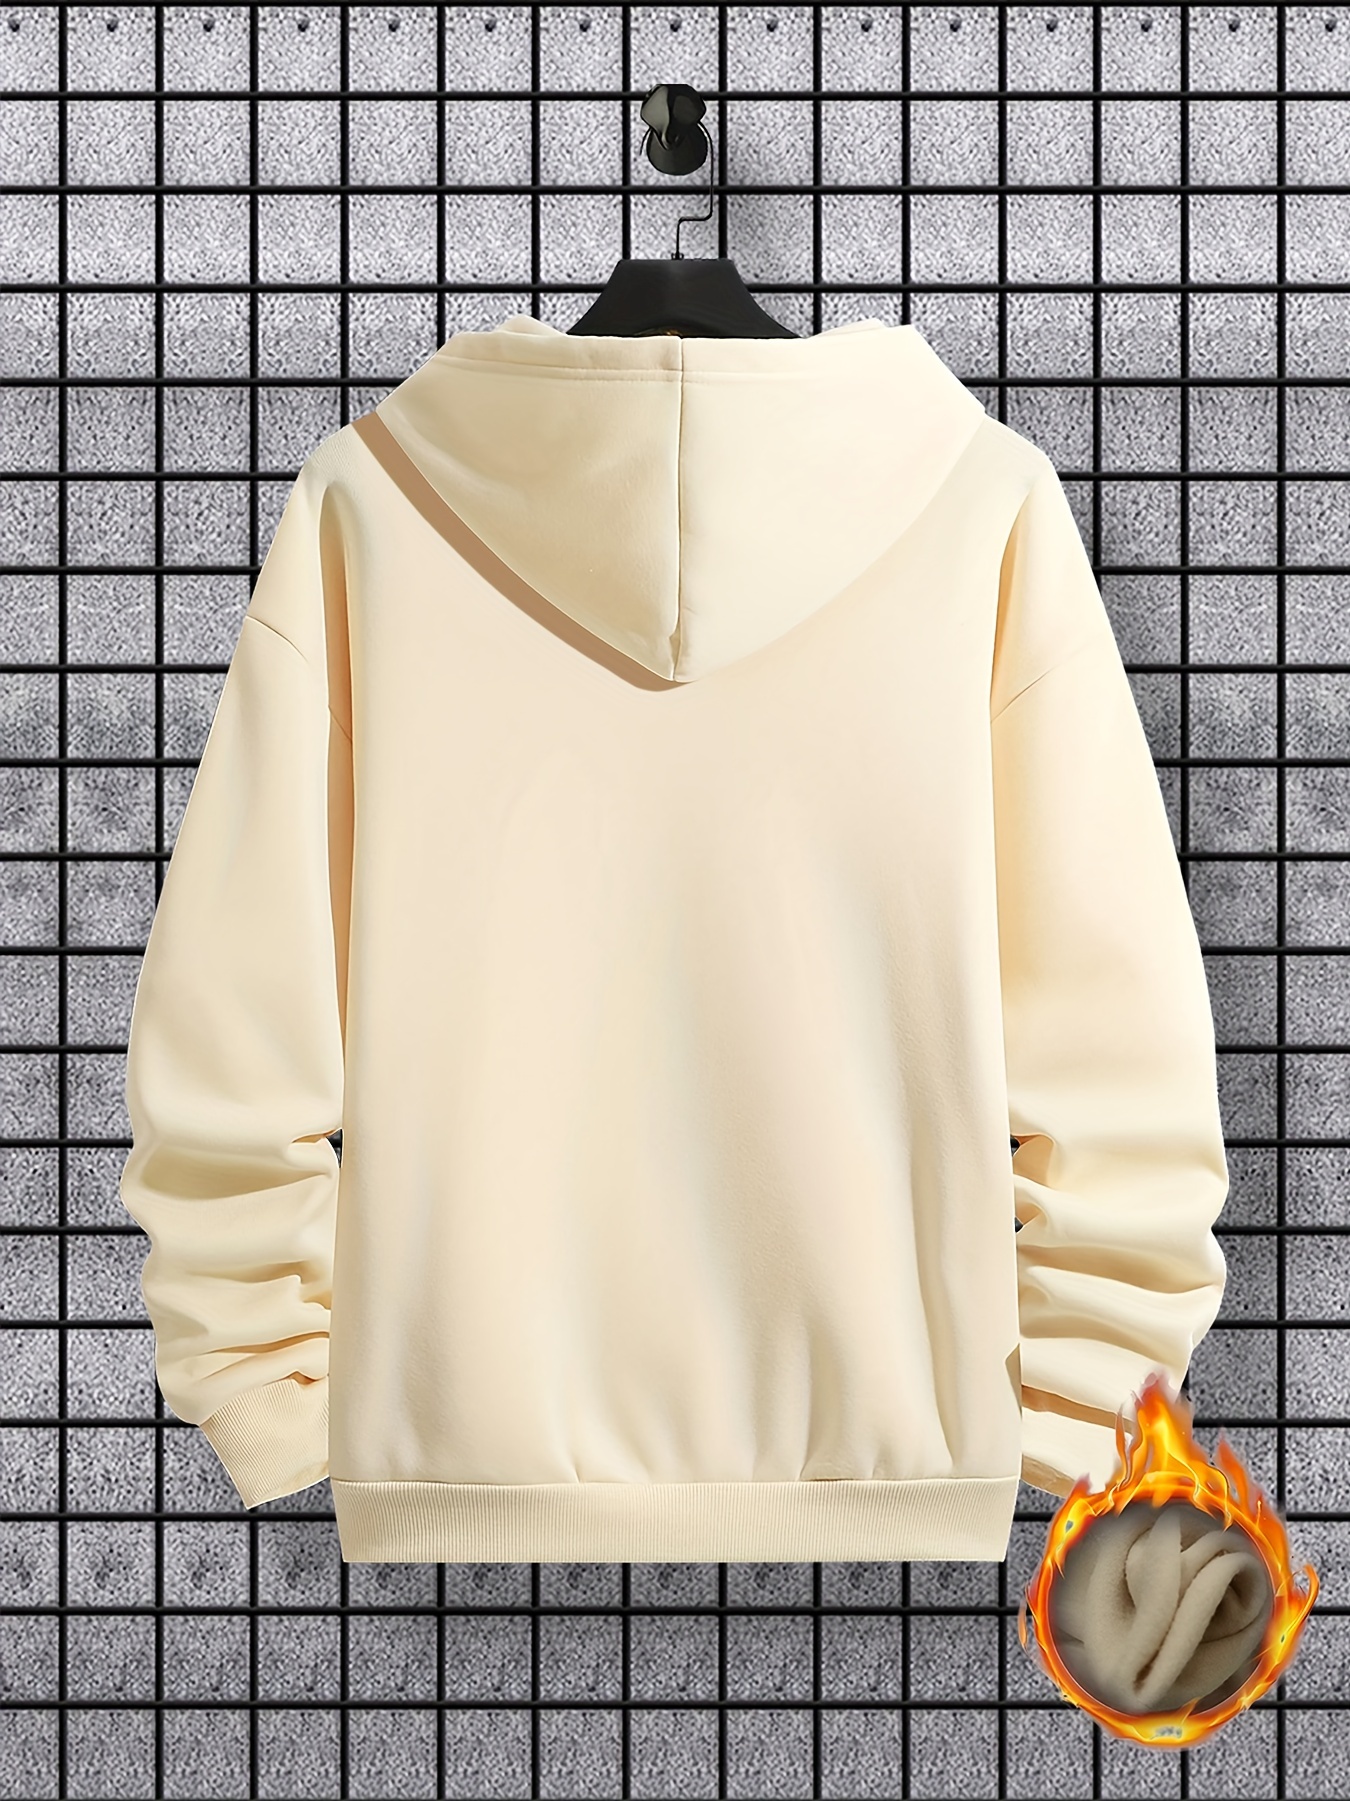 bus pattern warm hoodie with kangaroo pocket mens casual pullover hooded sweatshirt details 11